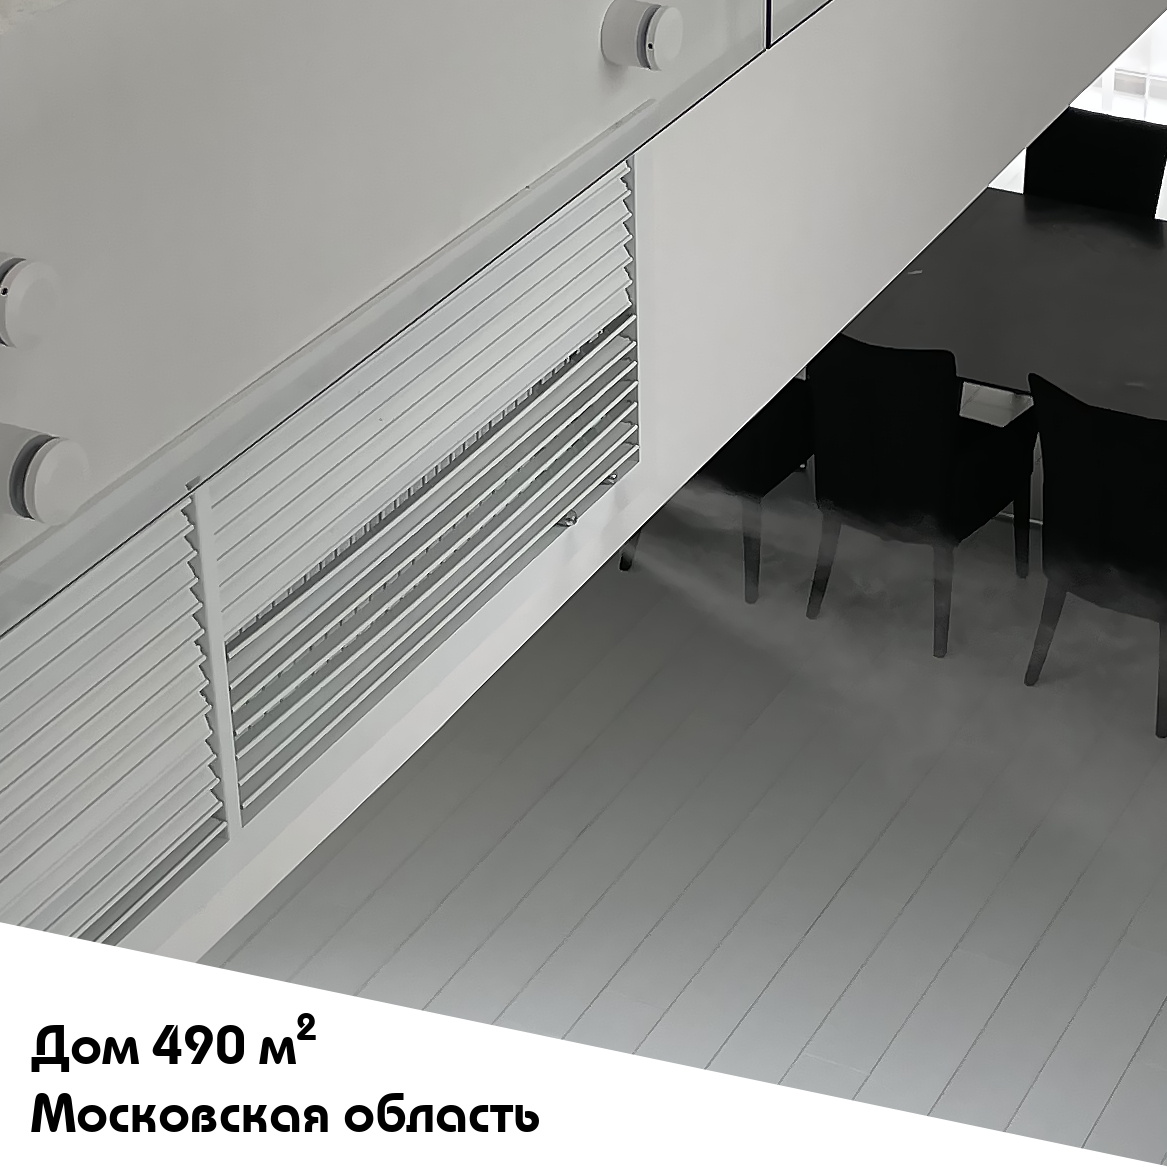 Выполненный объект. Система увлажнения для частного дома 490 м2 в Московской области